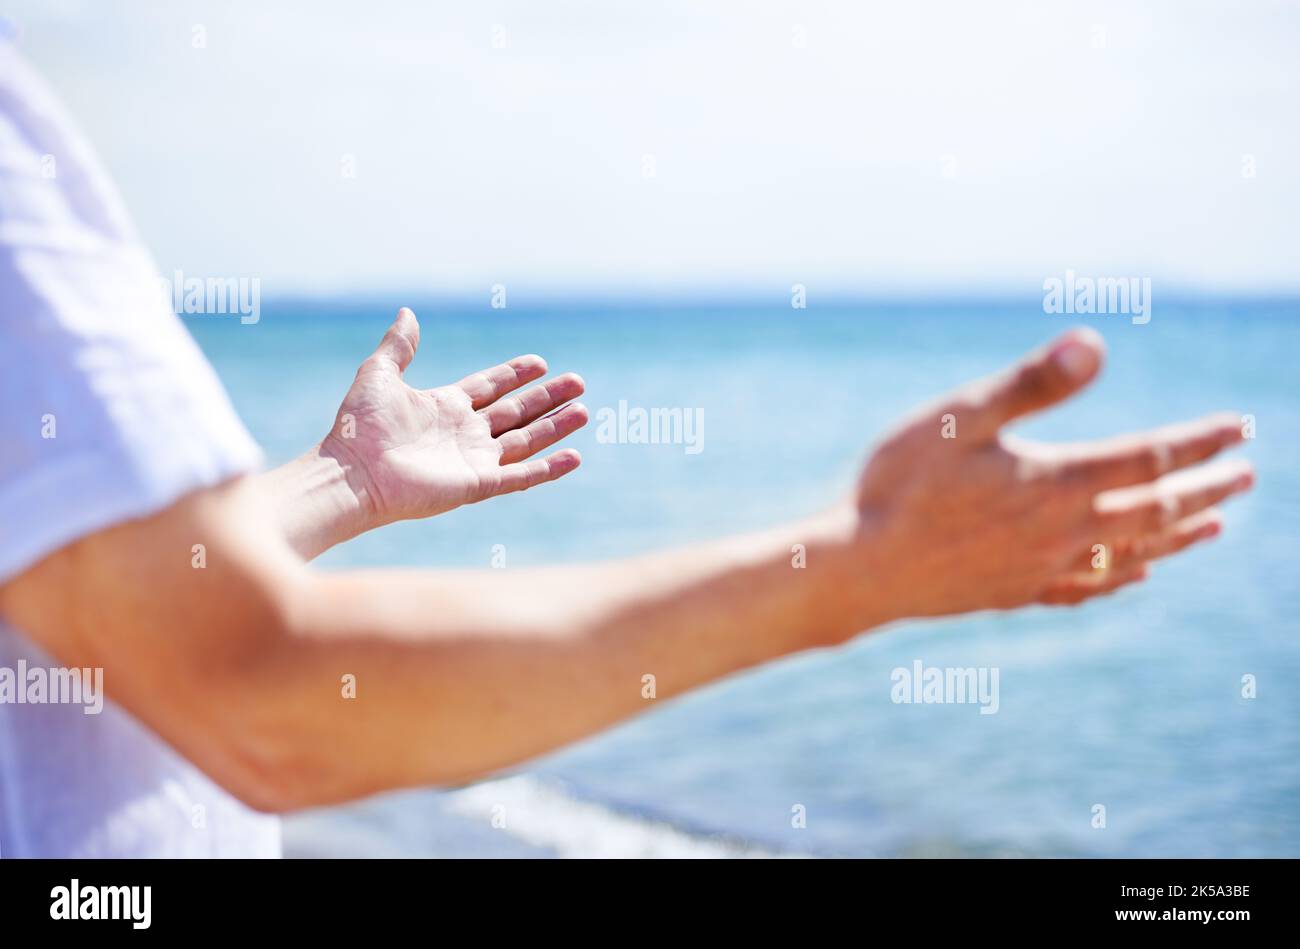 Être réceptif à la nature. Image rognée d'une personne mains sur un plan d'eau. Banque D'Images